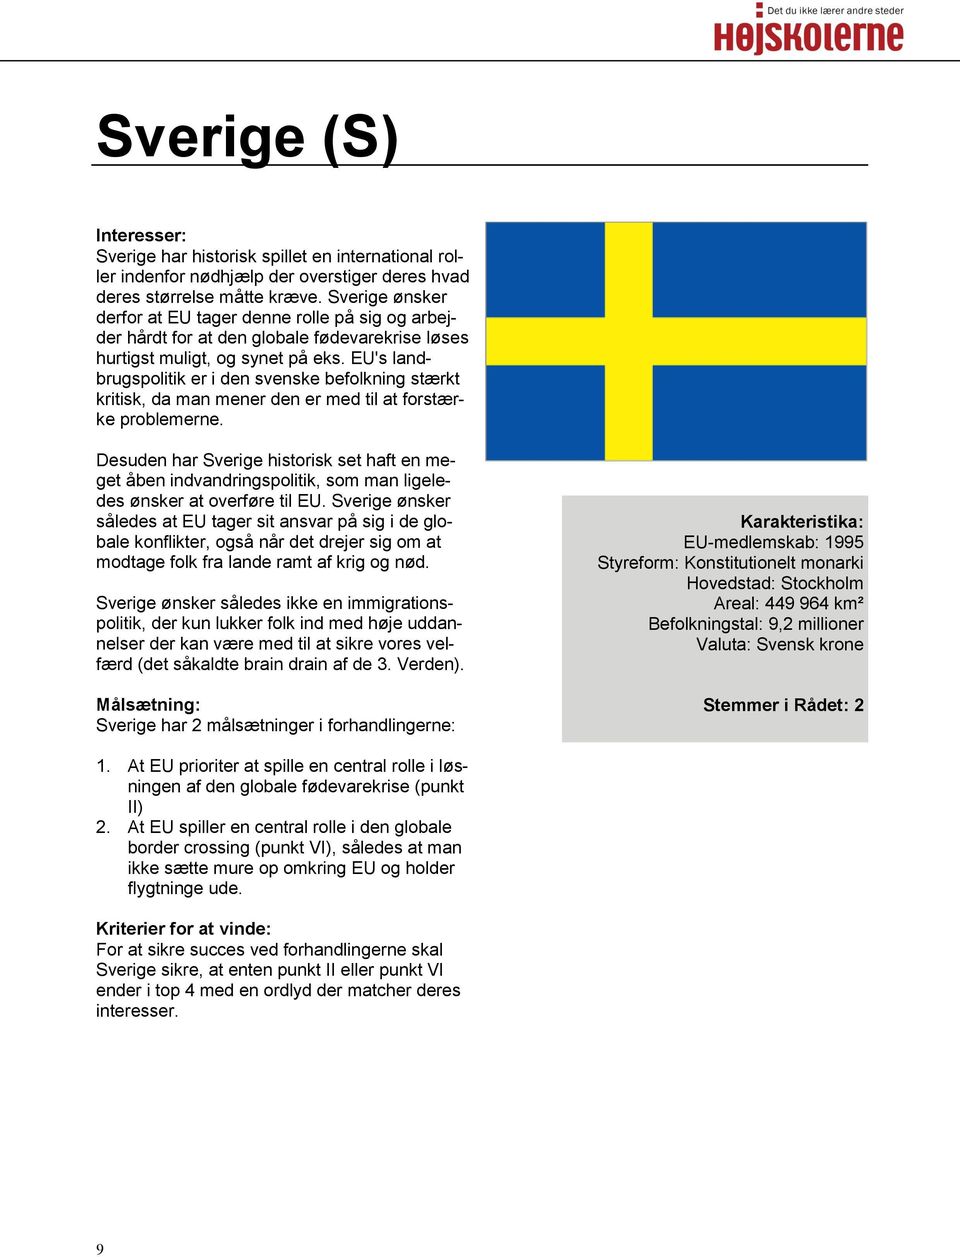 EU's landbrugspolitik er i den svenske befolkning stærkt kritisk, da man mener den er med til at forstærke problemerne.